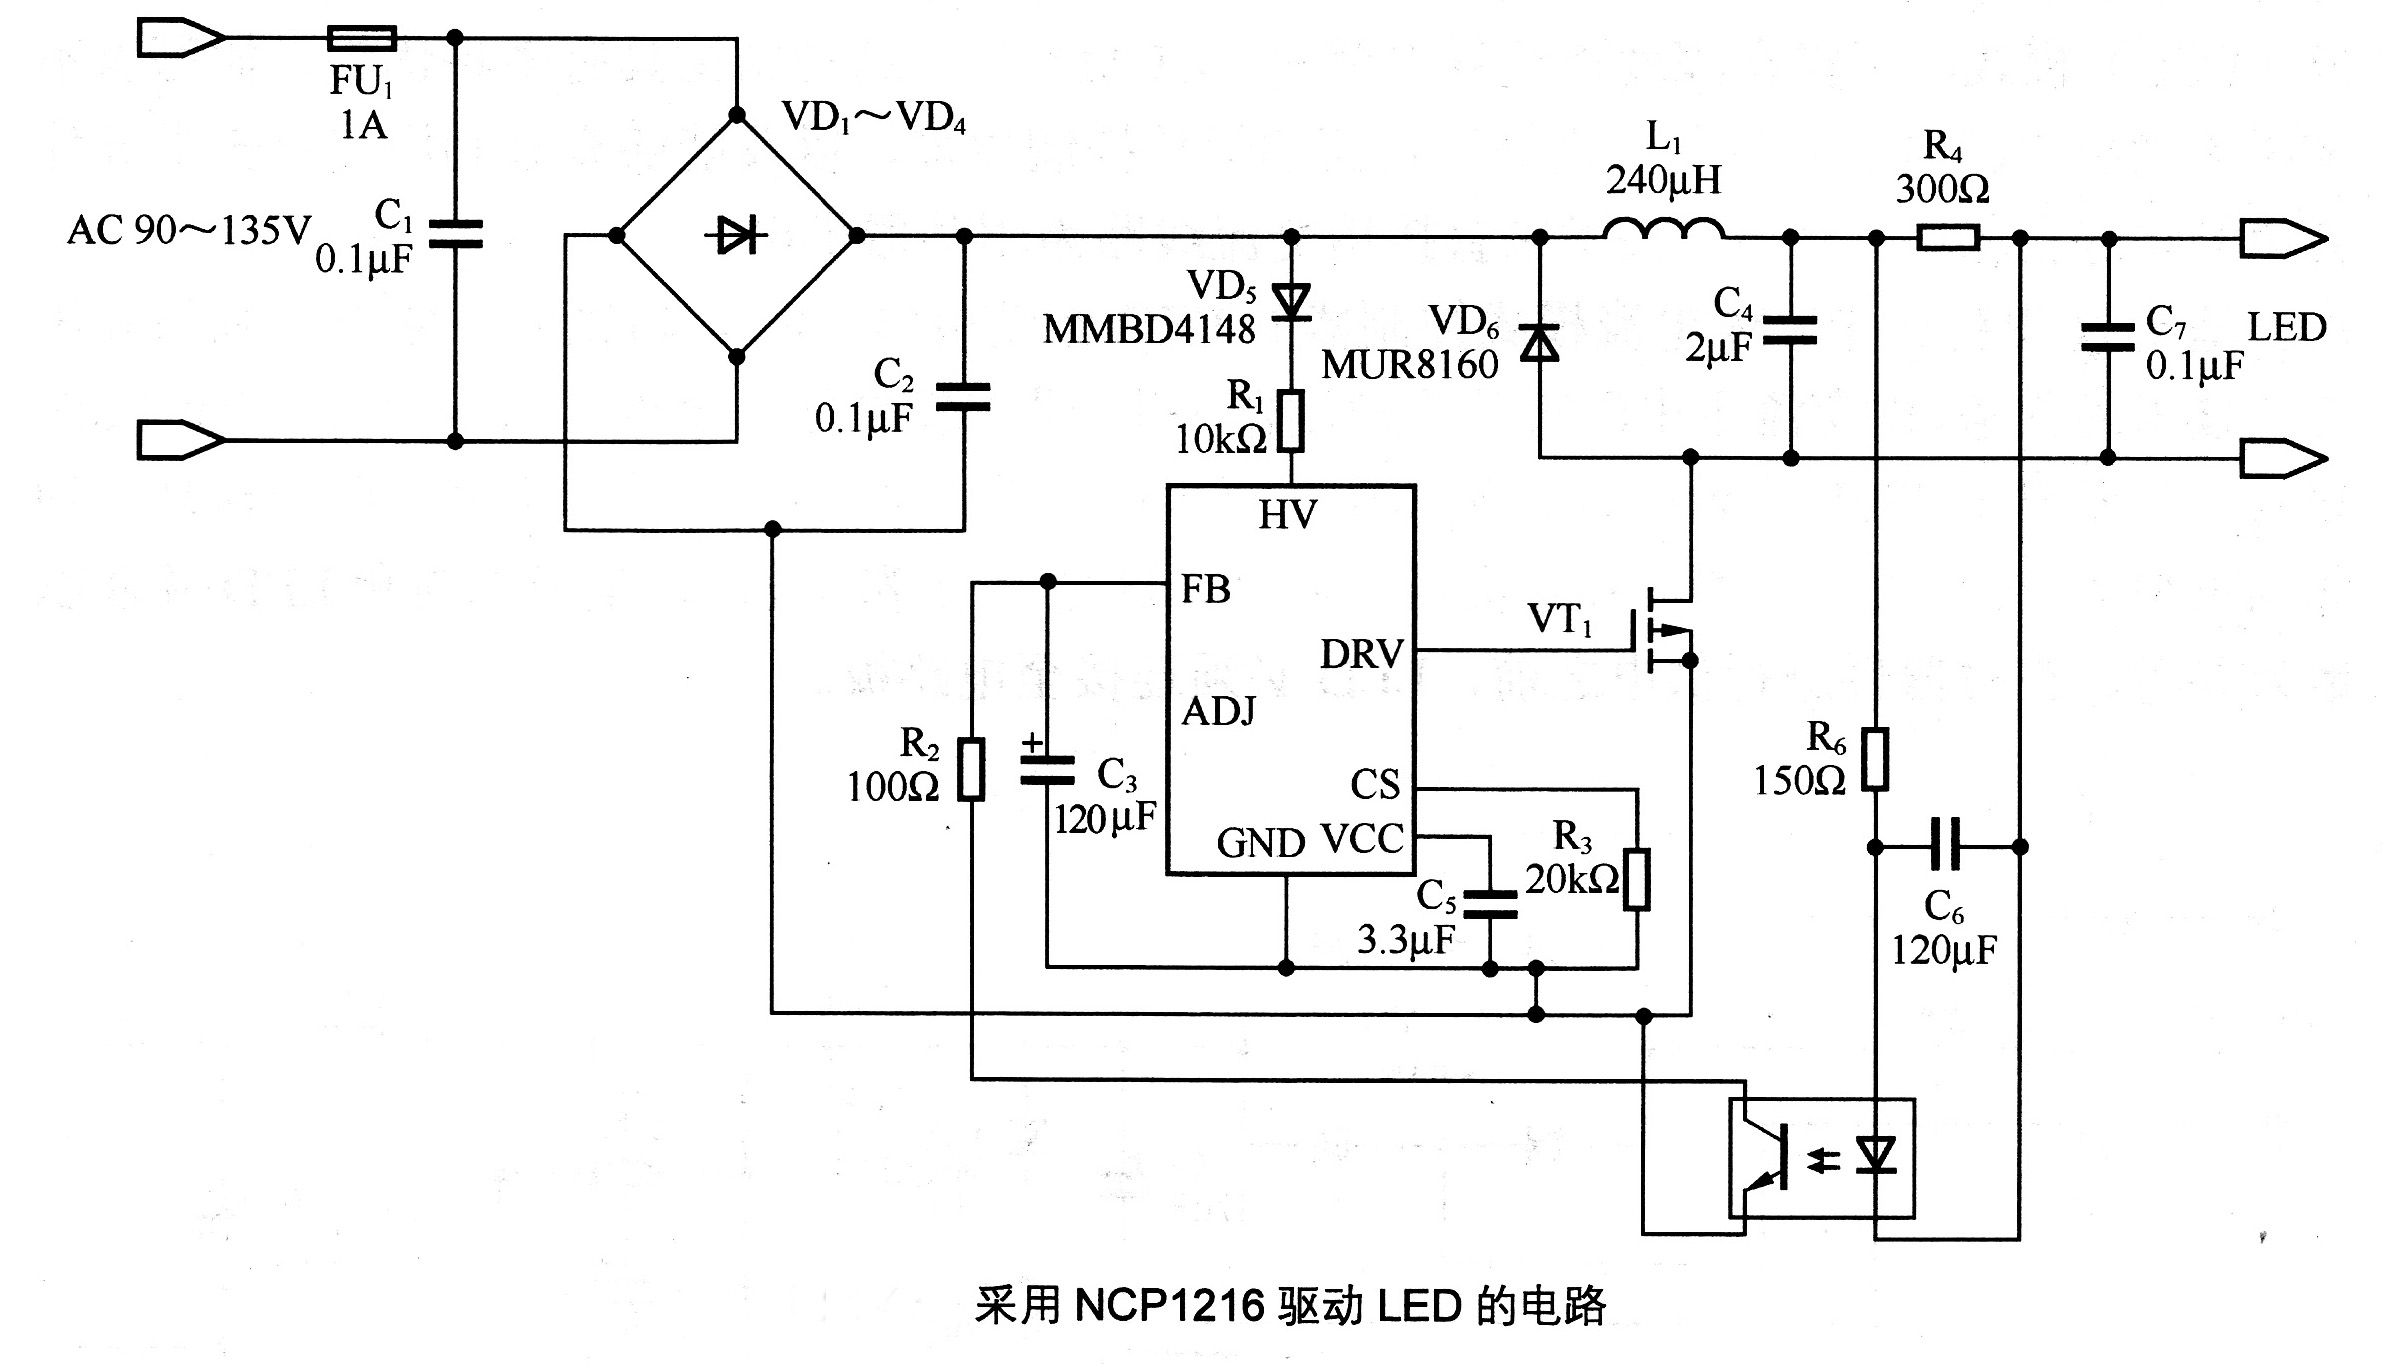 【图】采用NCP1216驱动LED的电路LED电路